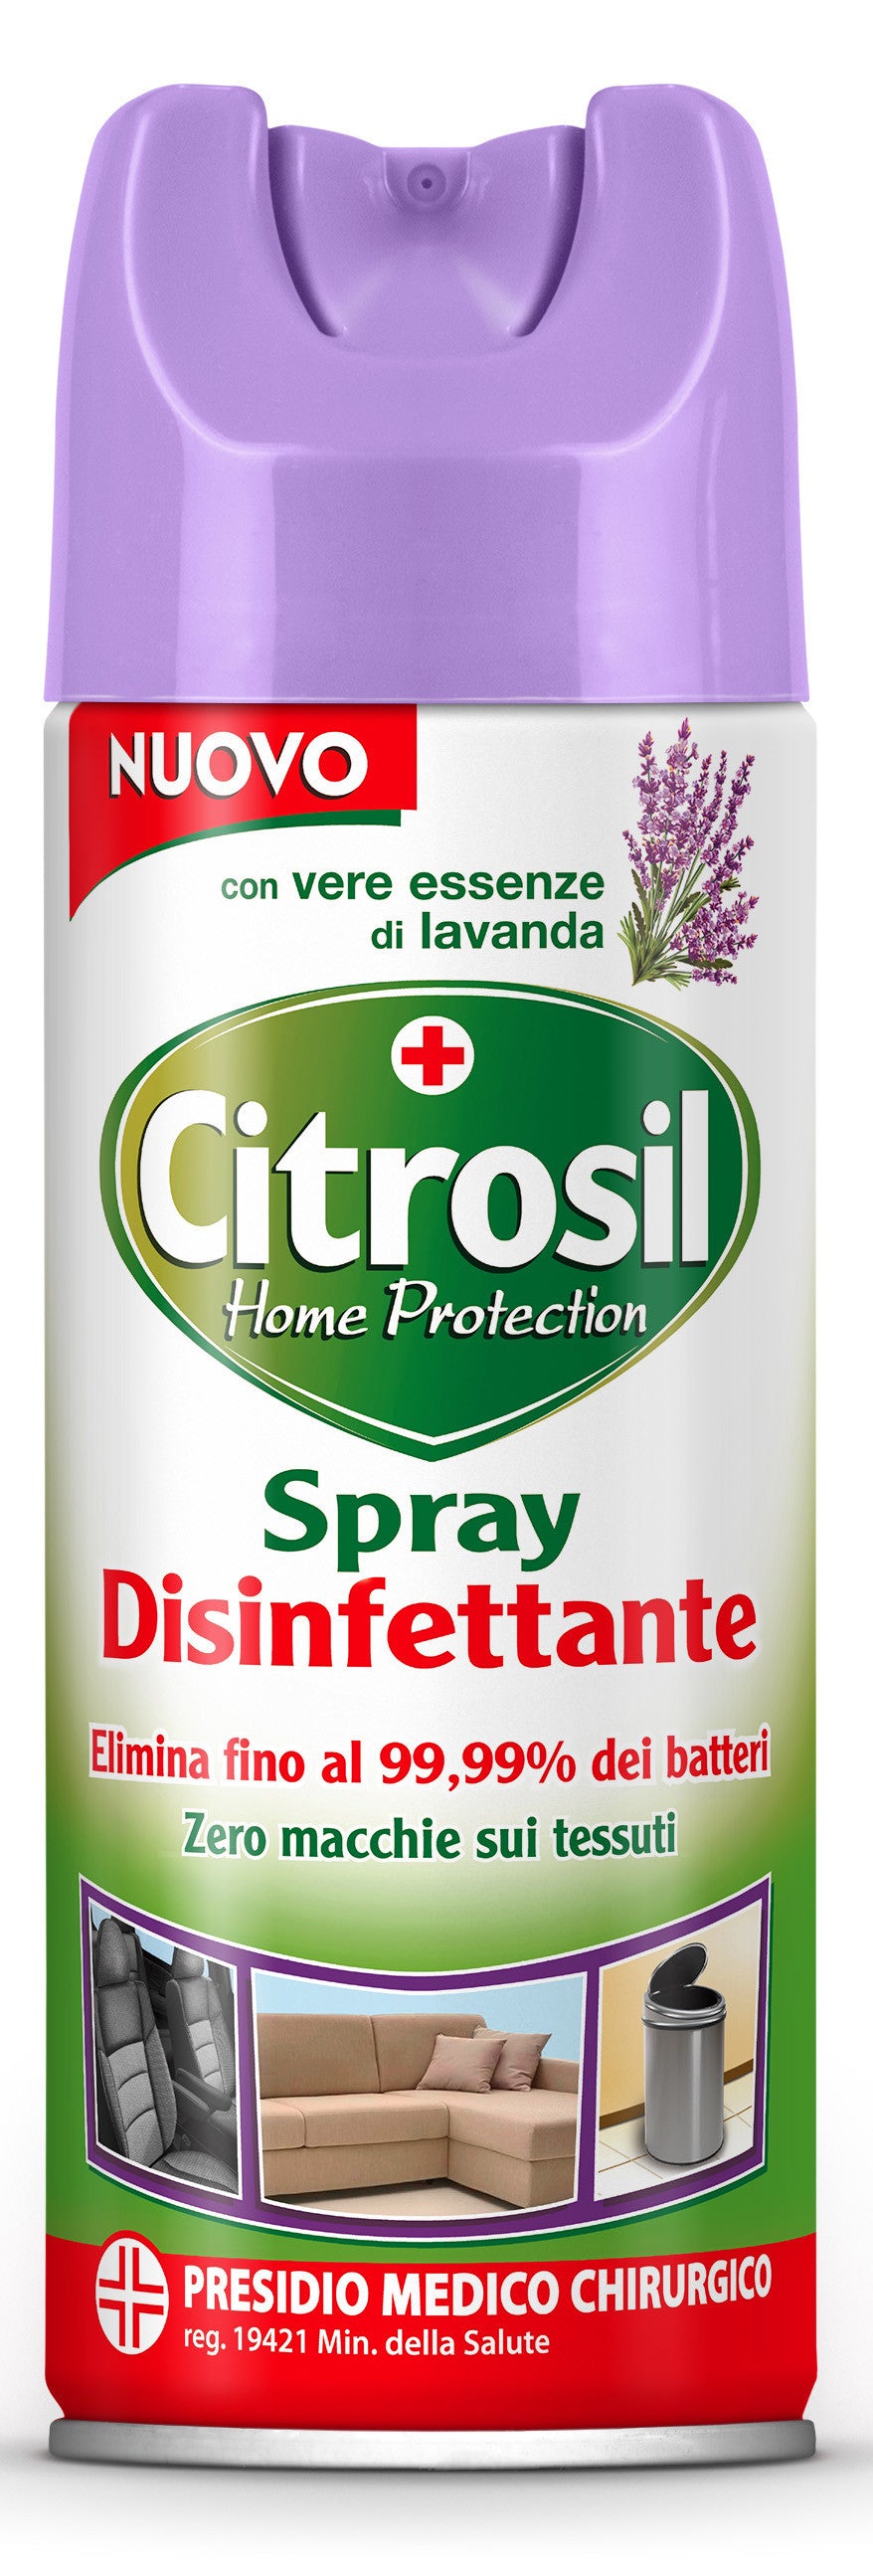 Citrosil spray disinfettante ml. 300